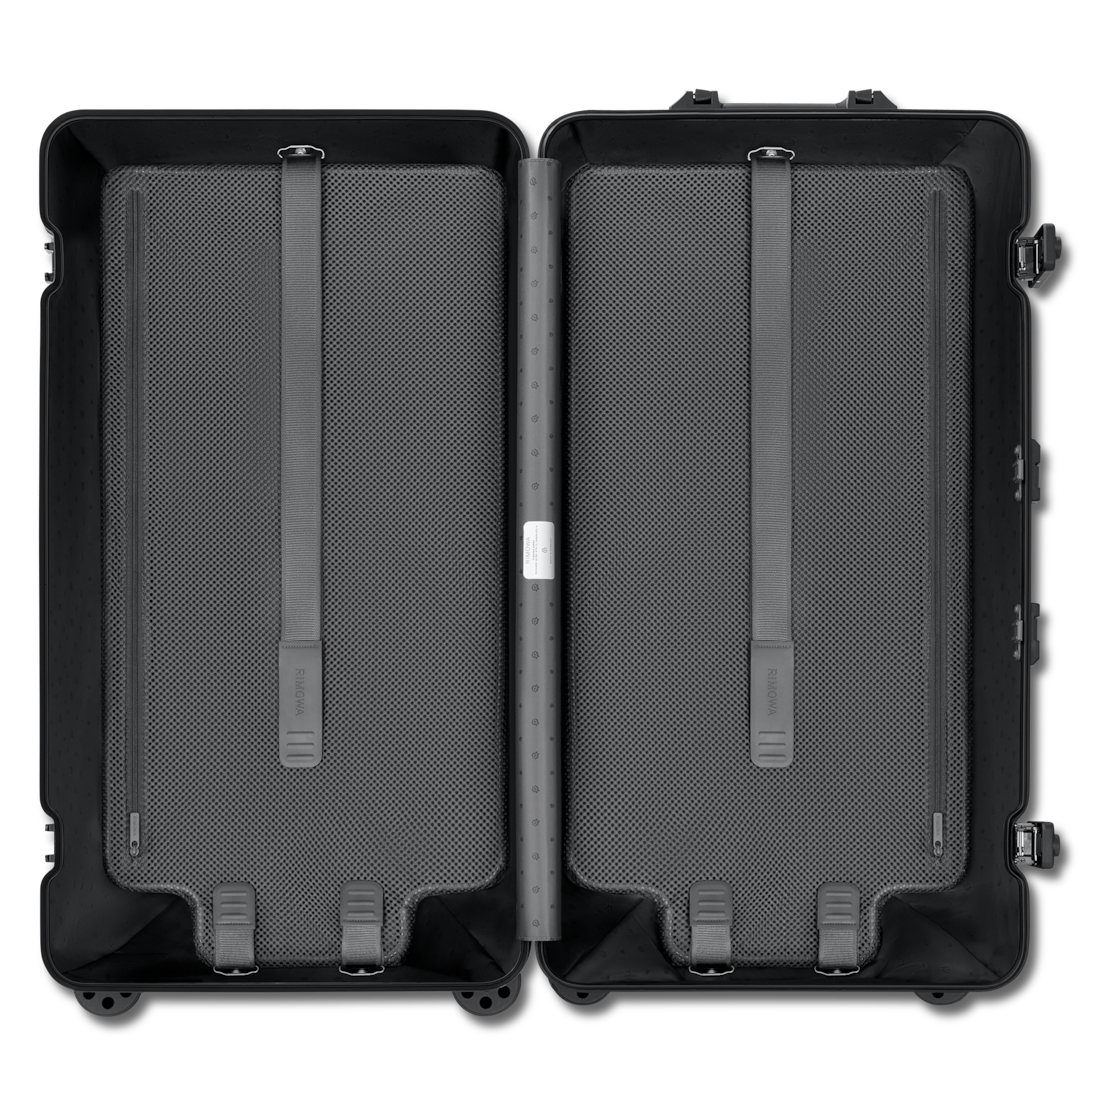 Original Trunk Plus Large Aluminium Suitcase | Black | RIMOWA